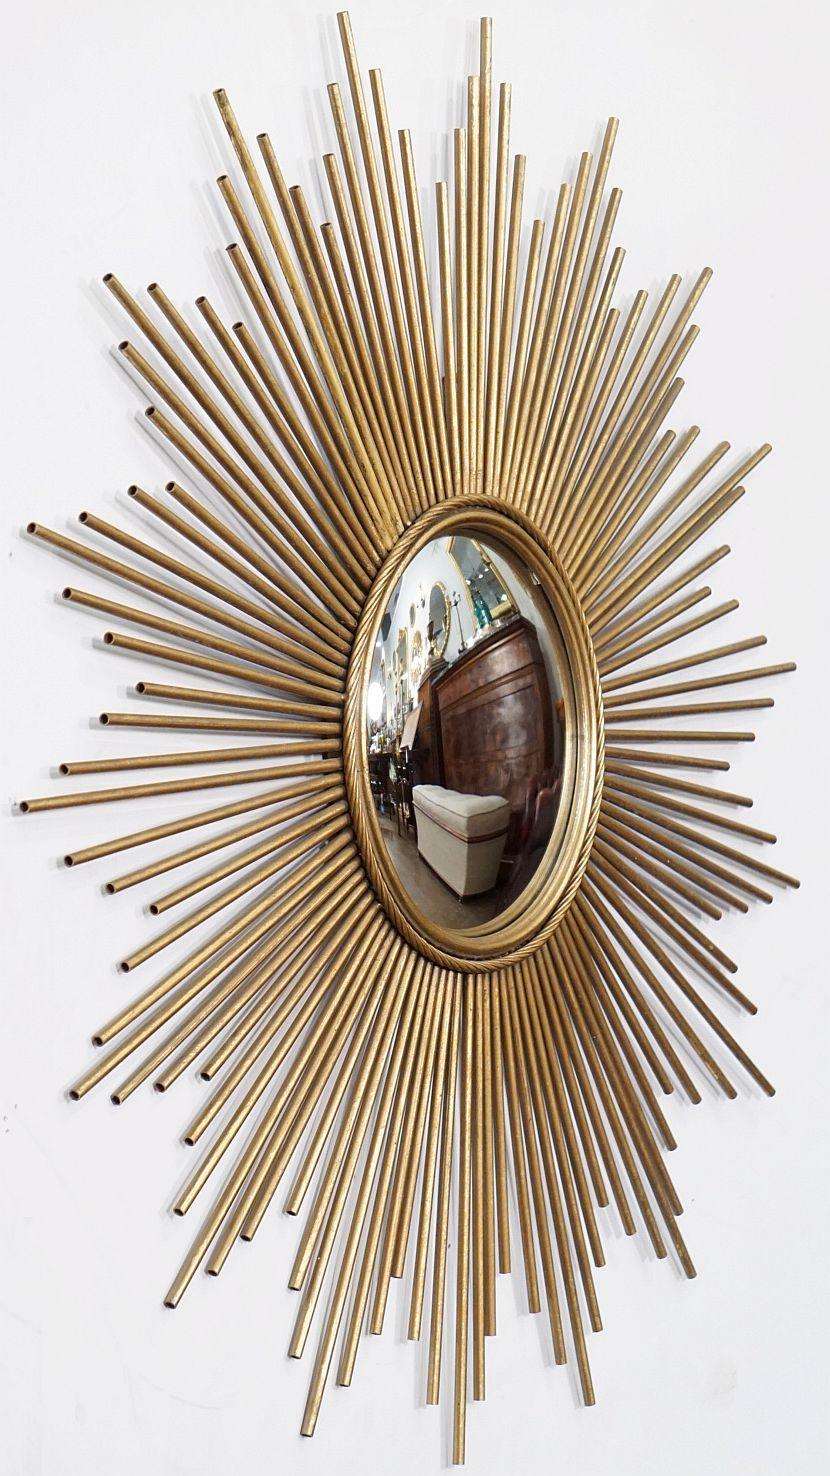 Miroir en métal doré à rayons de soleil (ou à étoiles) - 39 1/4 pouces de diamètre - avec un centre en verre miroir convexe dans un cadre moulé avec une bordure à motif de corde par Chaty Vallauris.

Diamètre du miroir convexe : 11 pouces

Le miroir